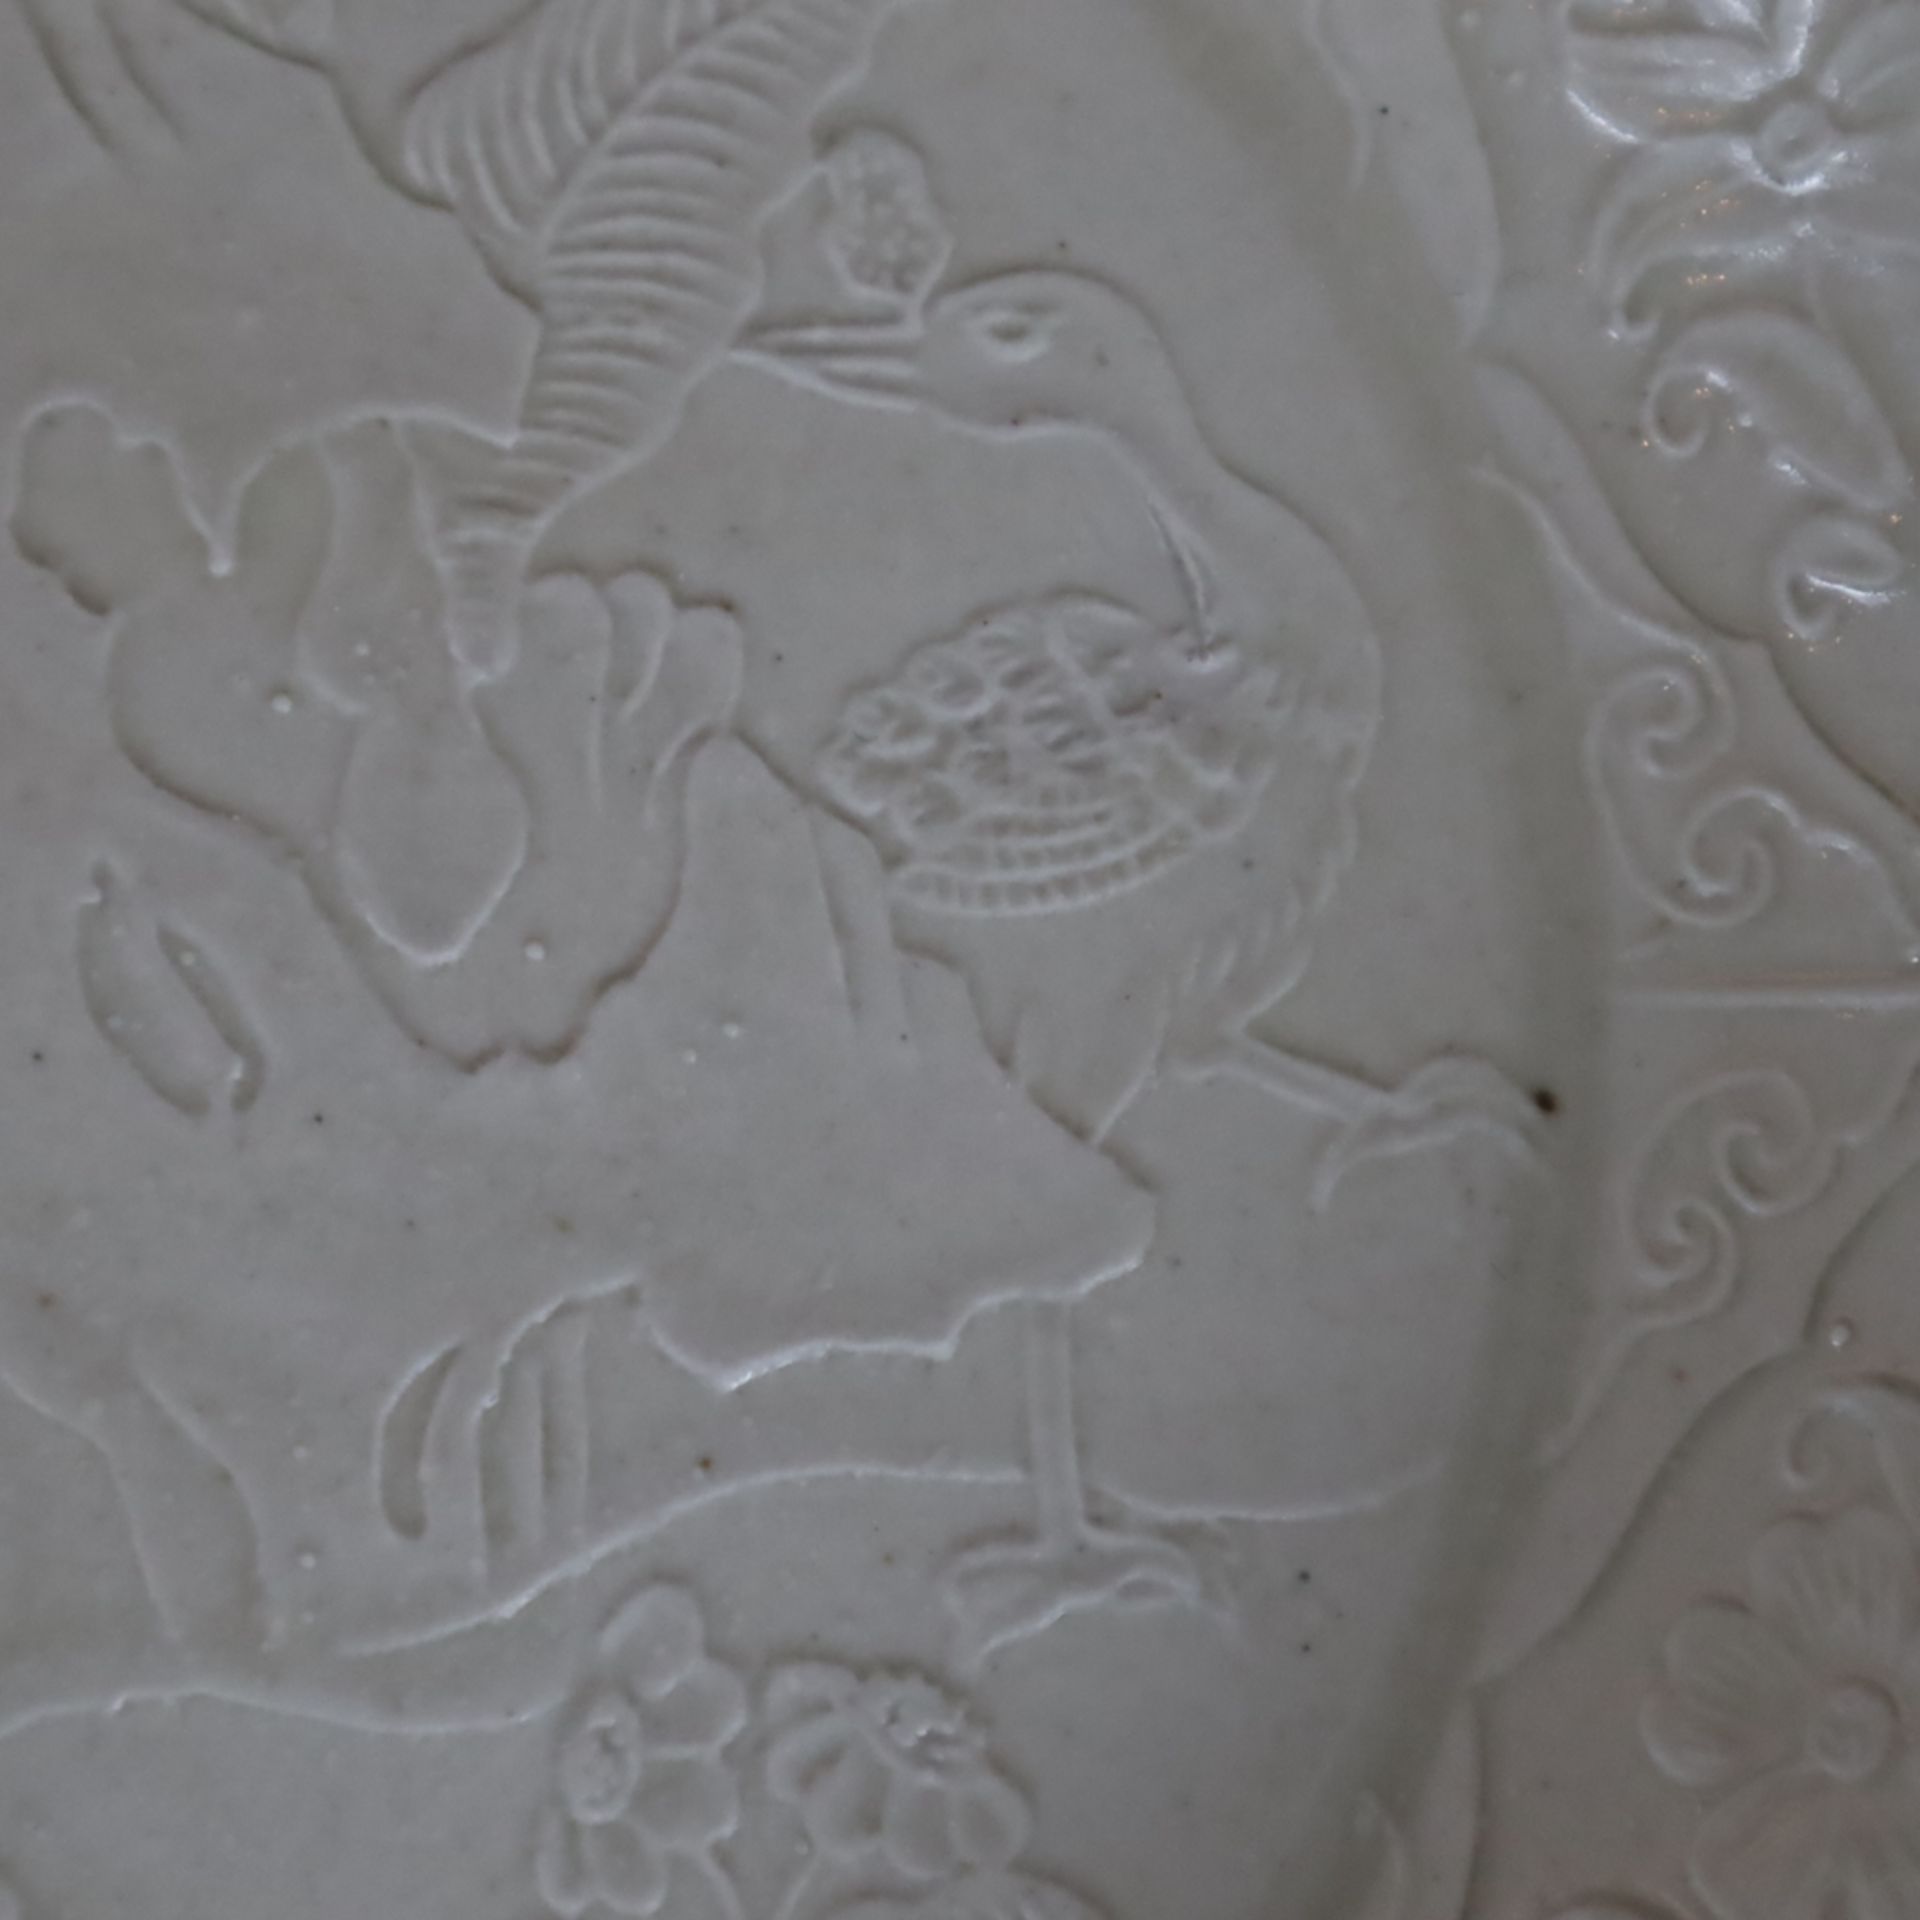 Flache Schale - China, Steinzeug, runde Form ohne Standring, allseits gräuliche Glasur, im Inneren  - Bild 6 aus 8